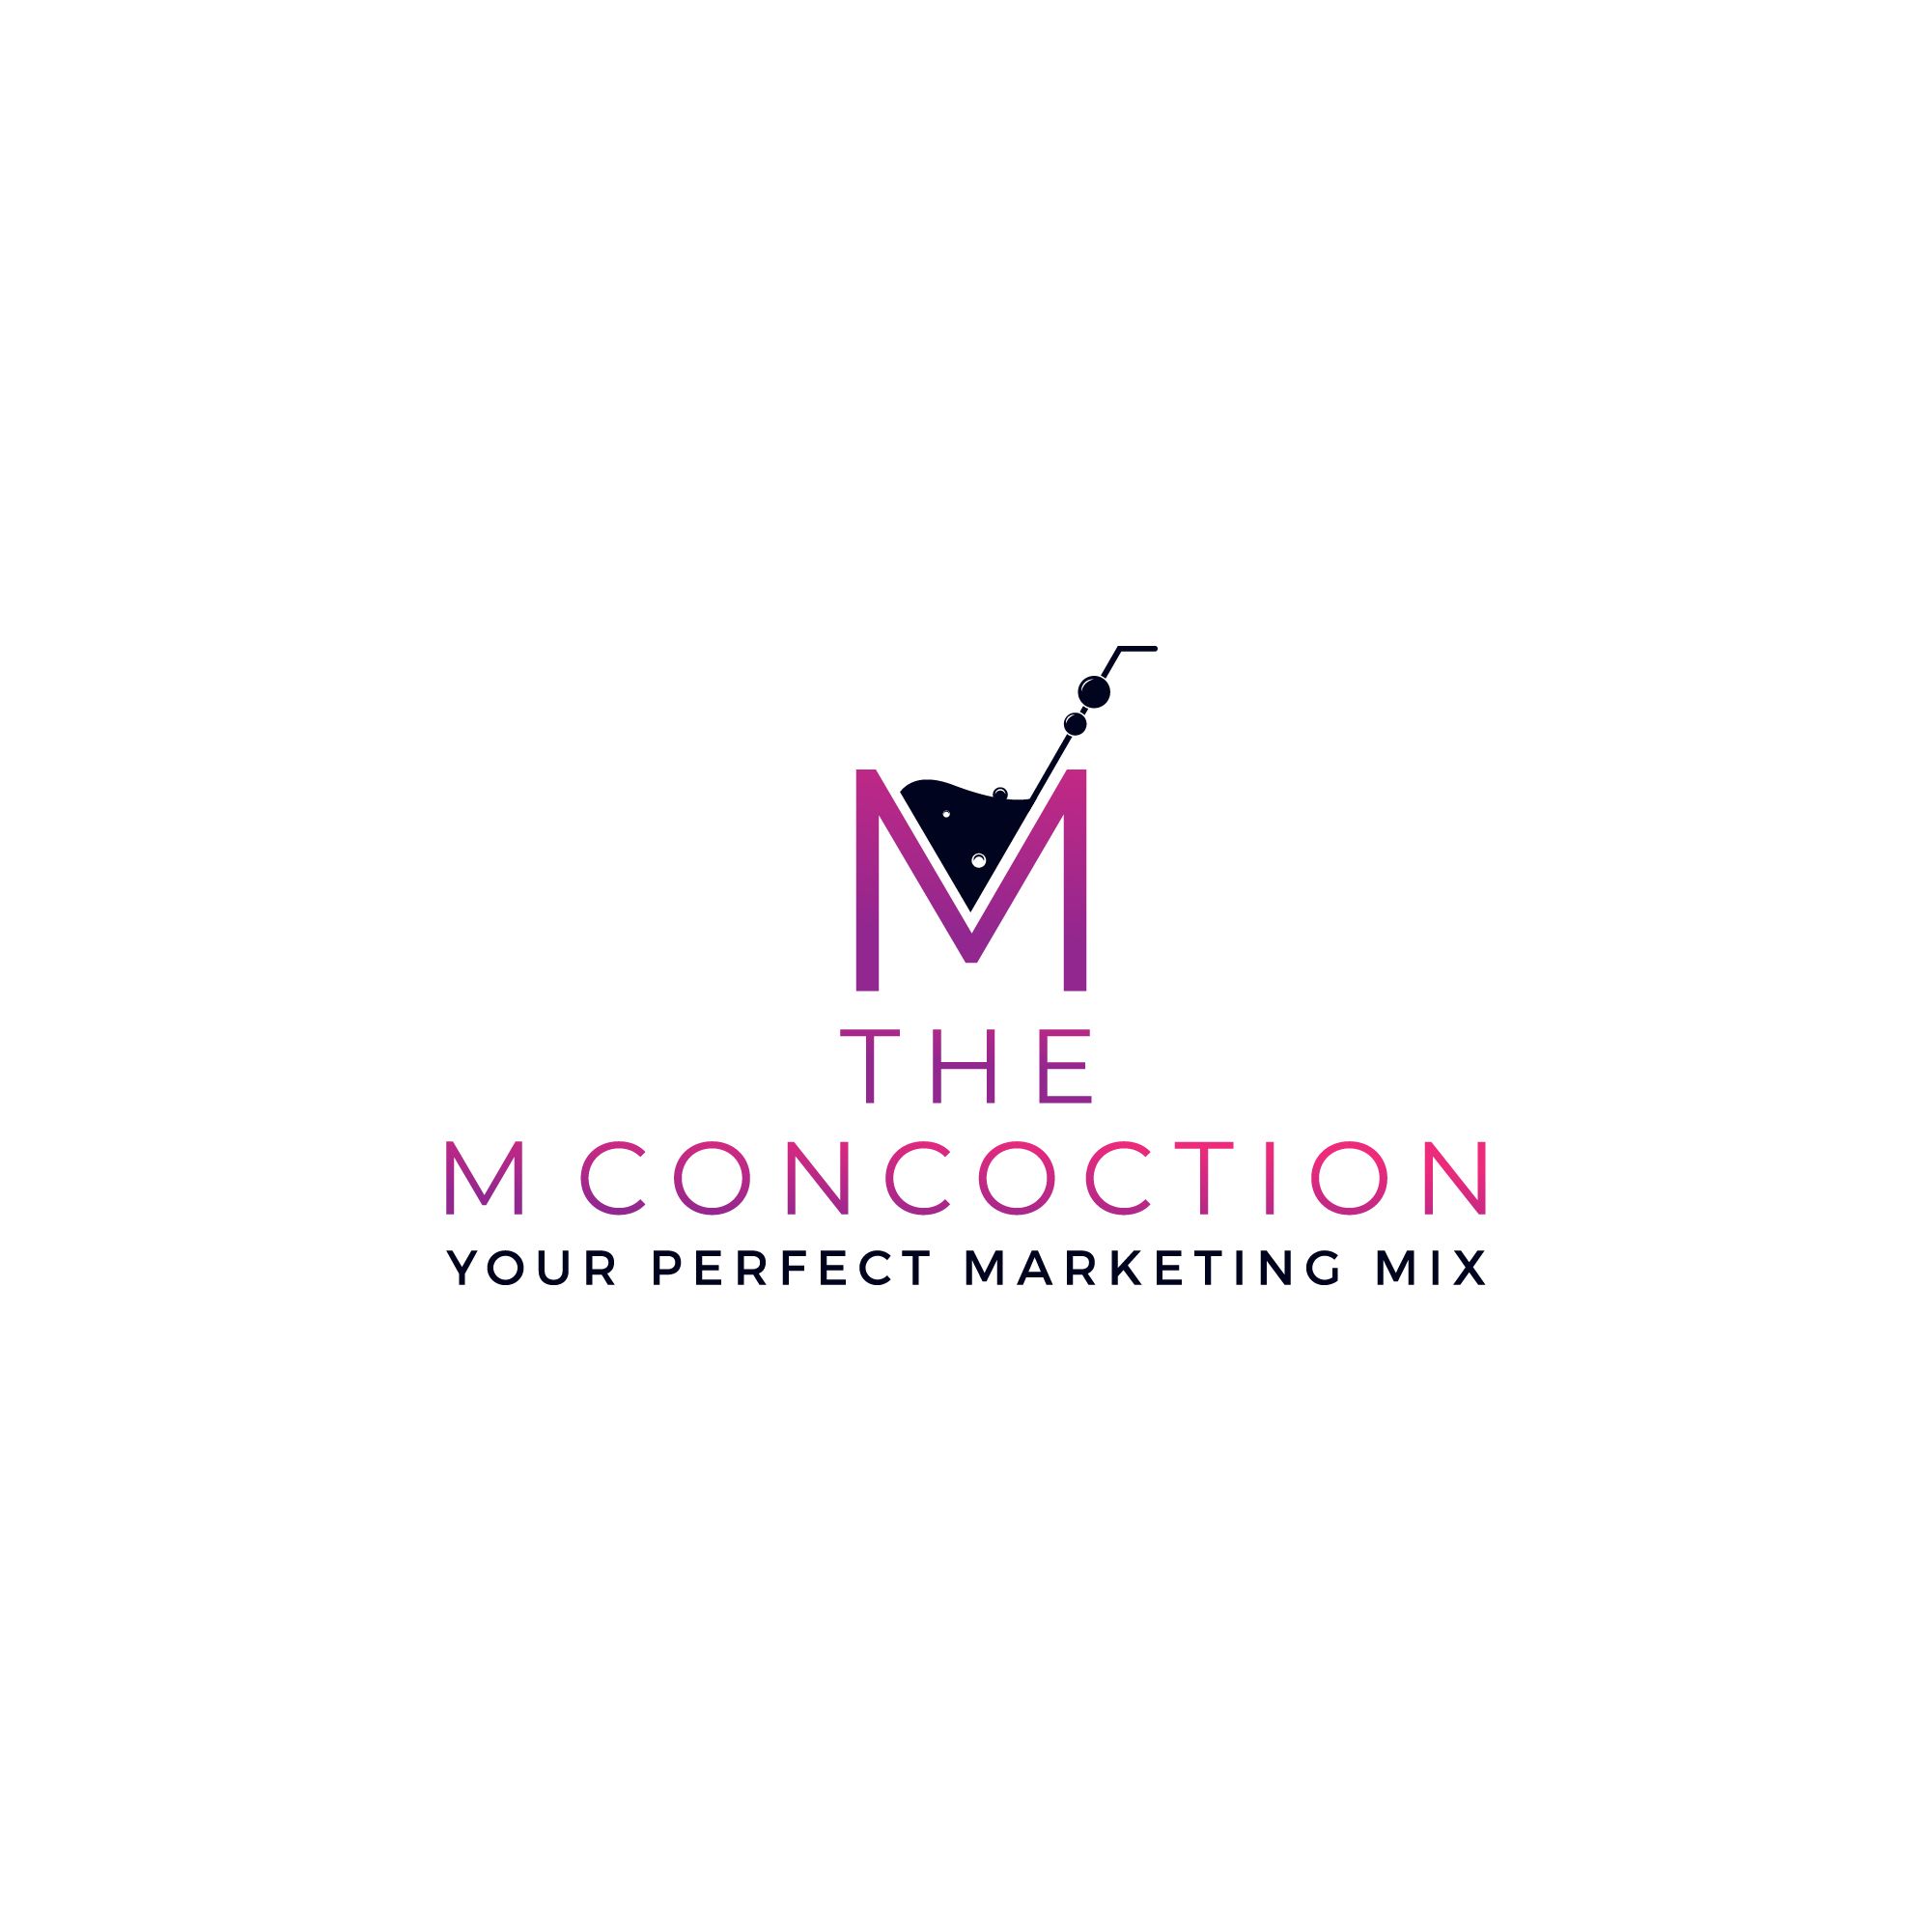 The M Concoction